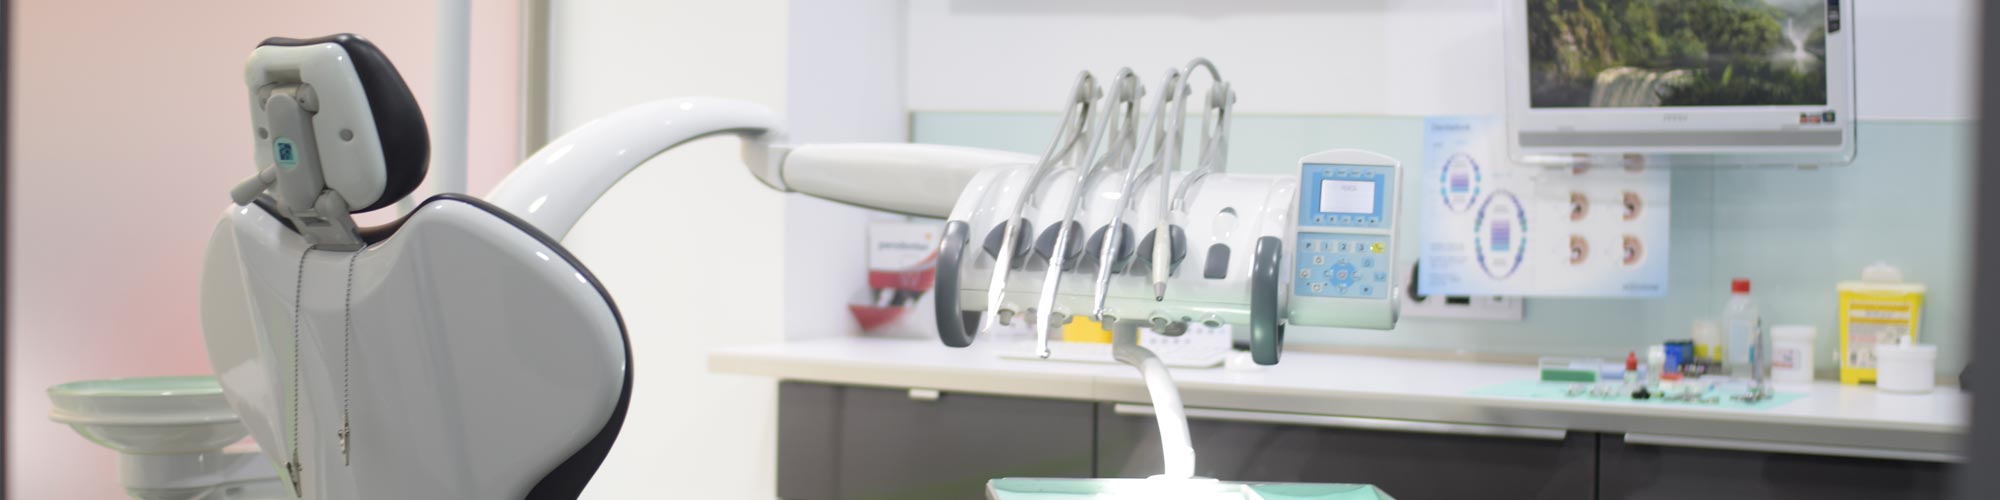 clínica dental arpeldental